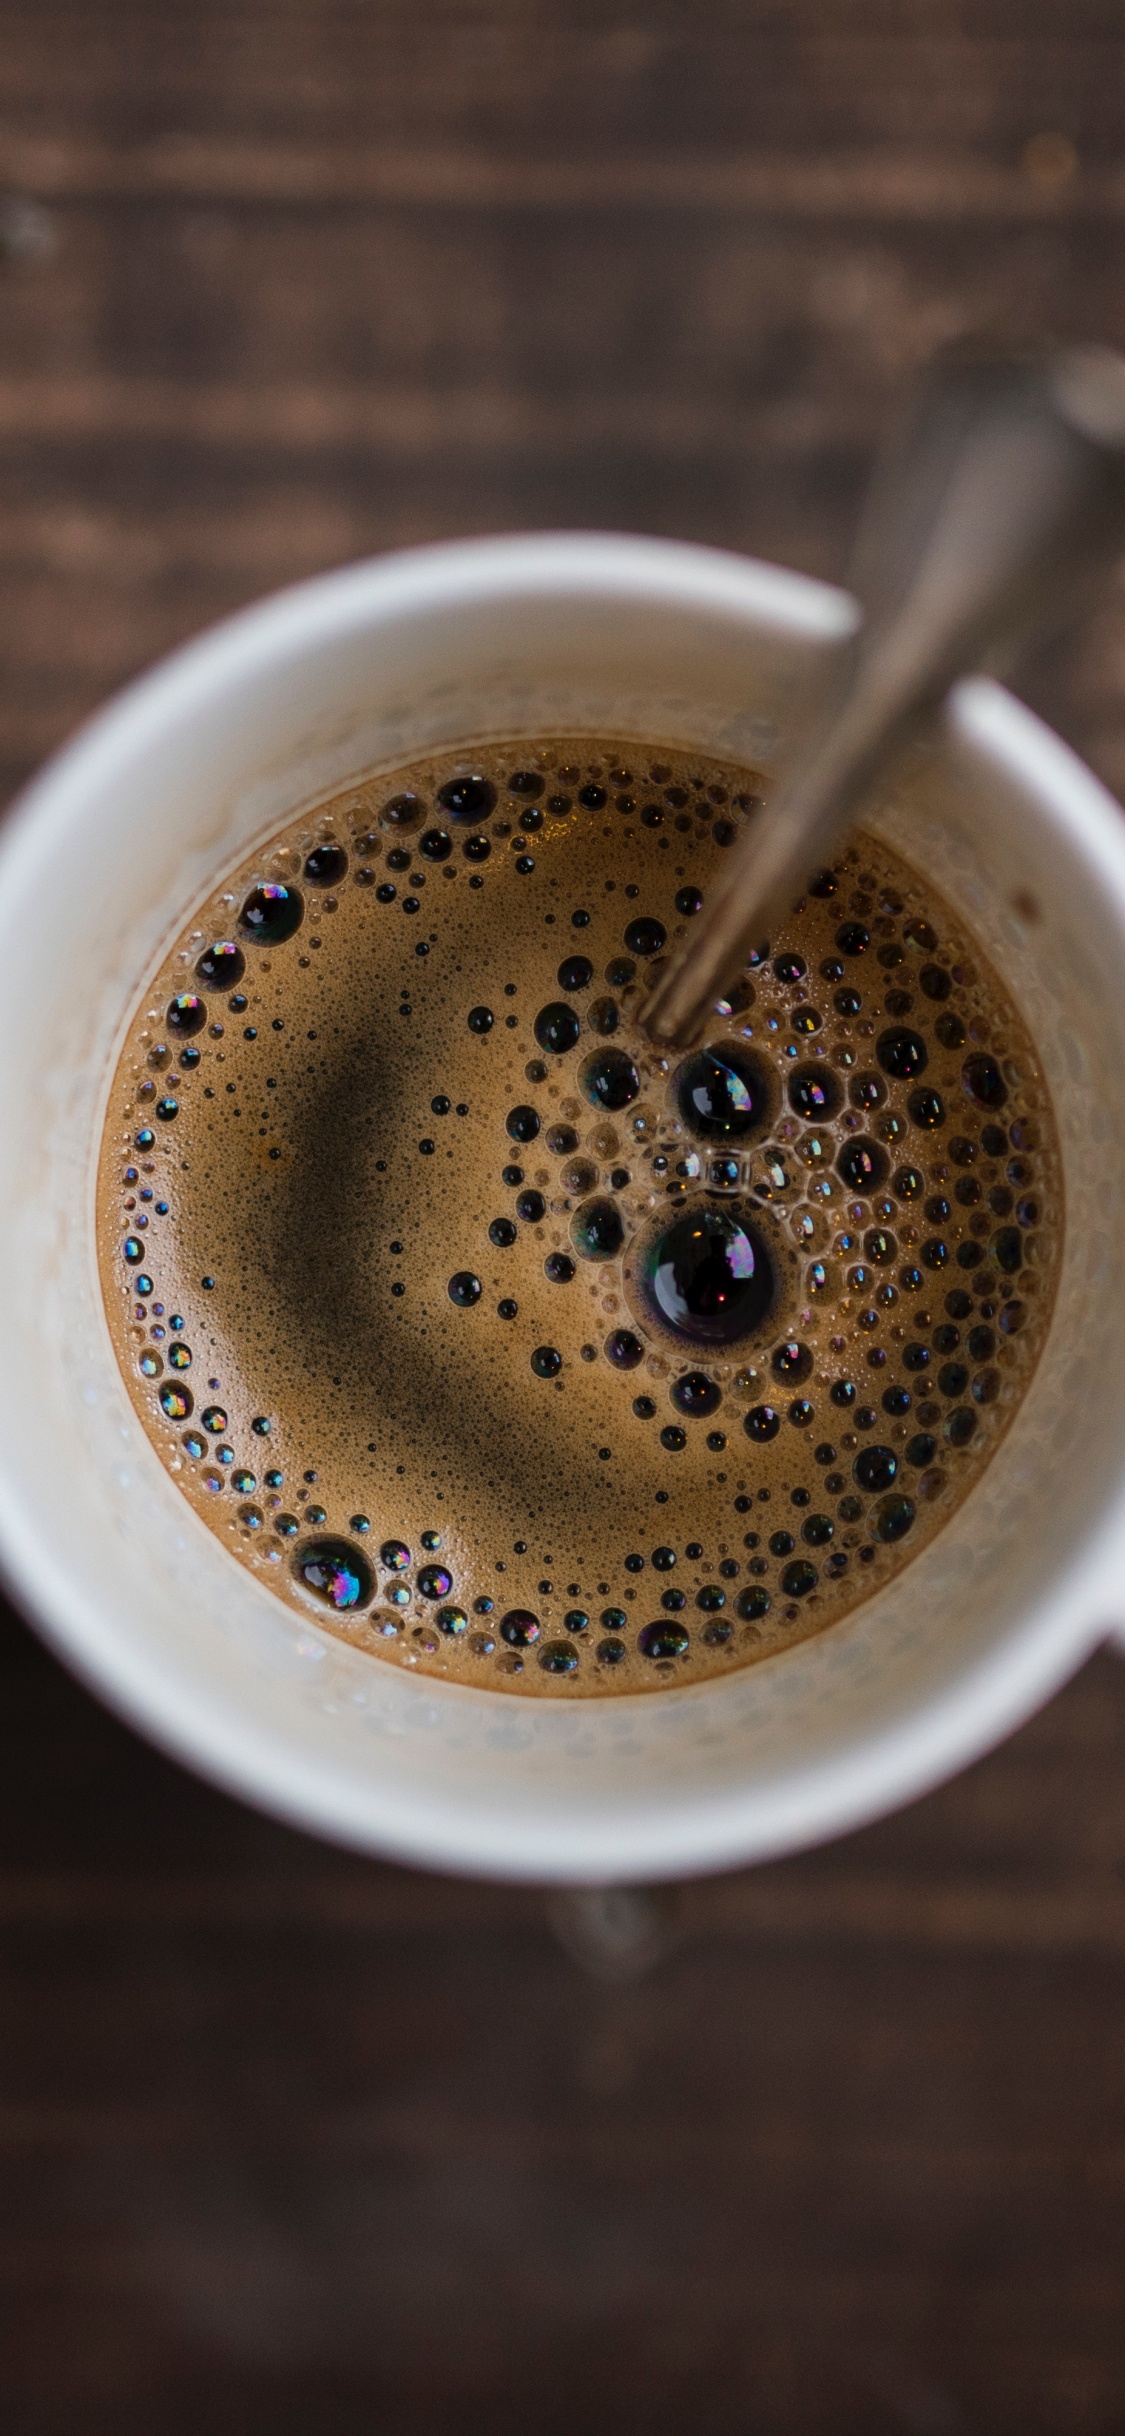 速溶咖啡, 咖啡馆, 咖啡因, 咖啡杯, 浓缩咖啡 壁纸 1125x2436 允许